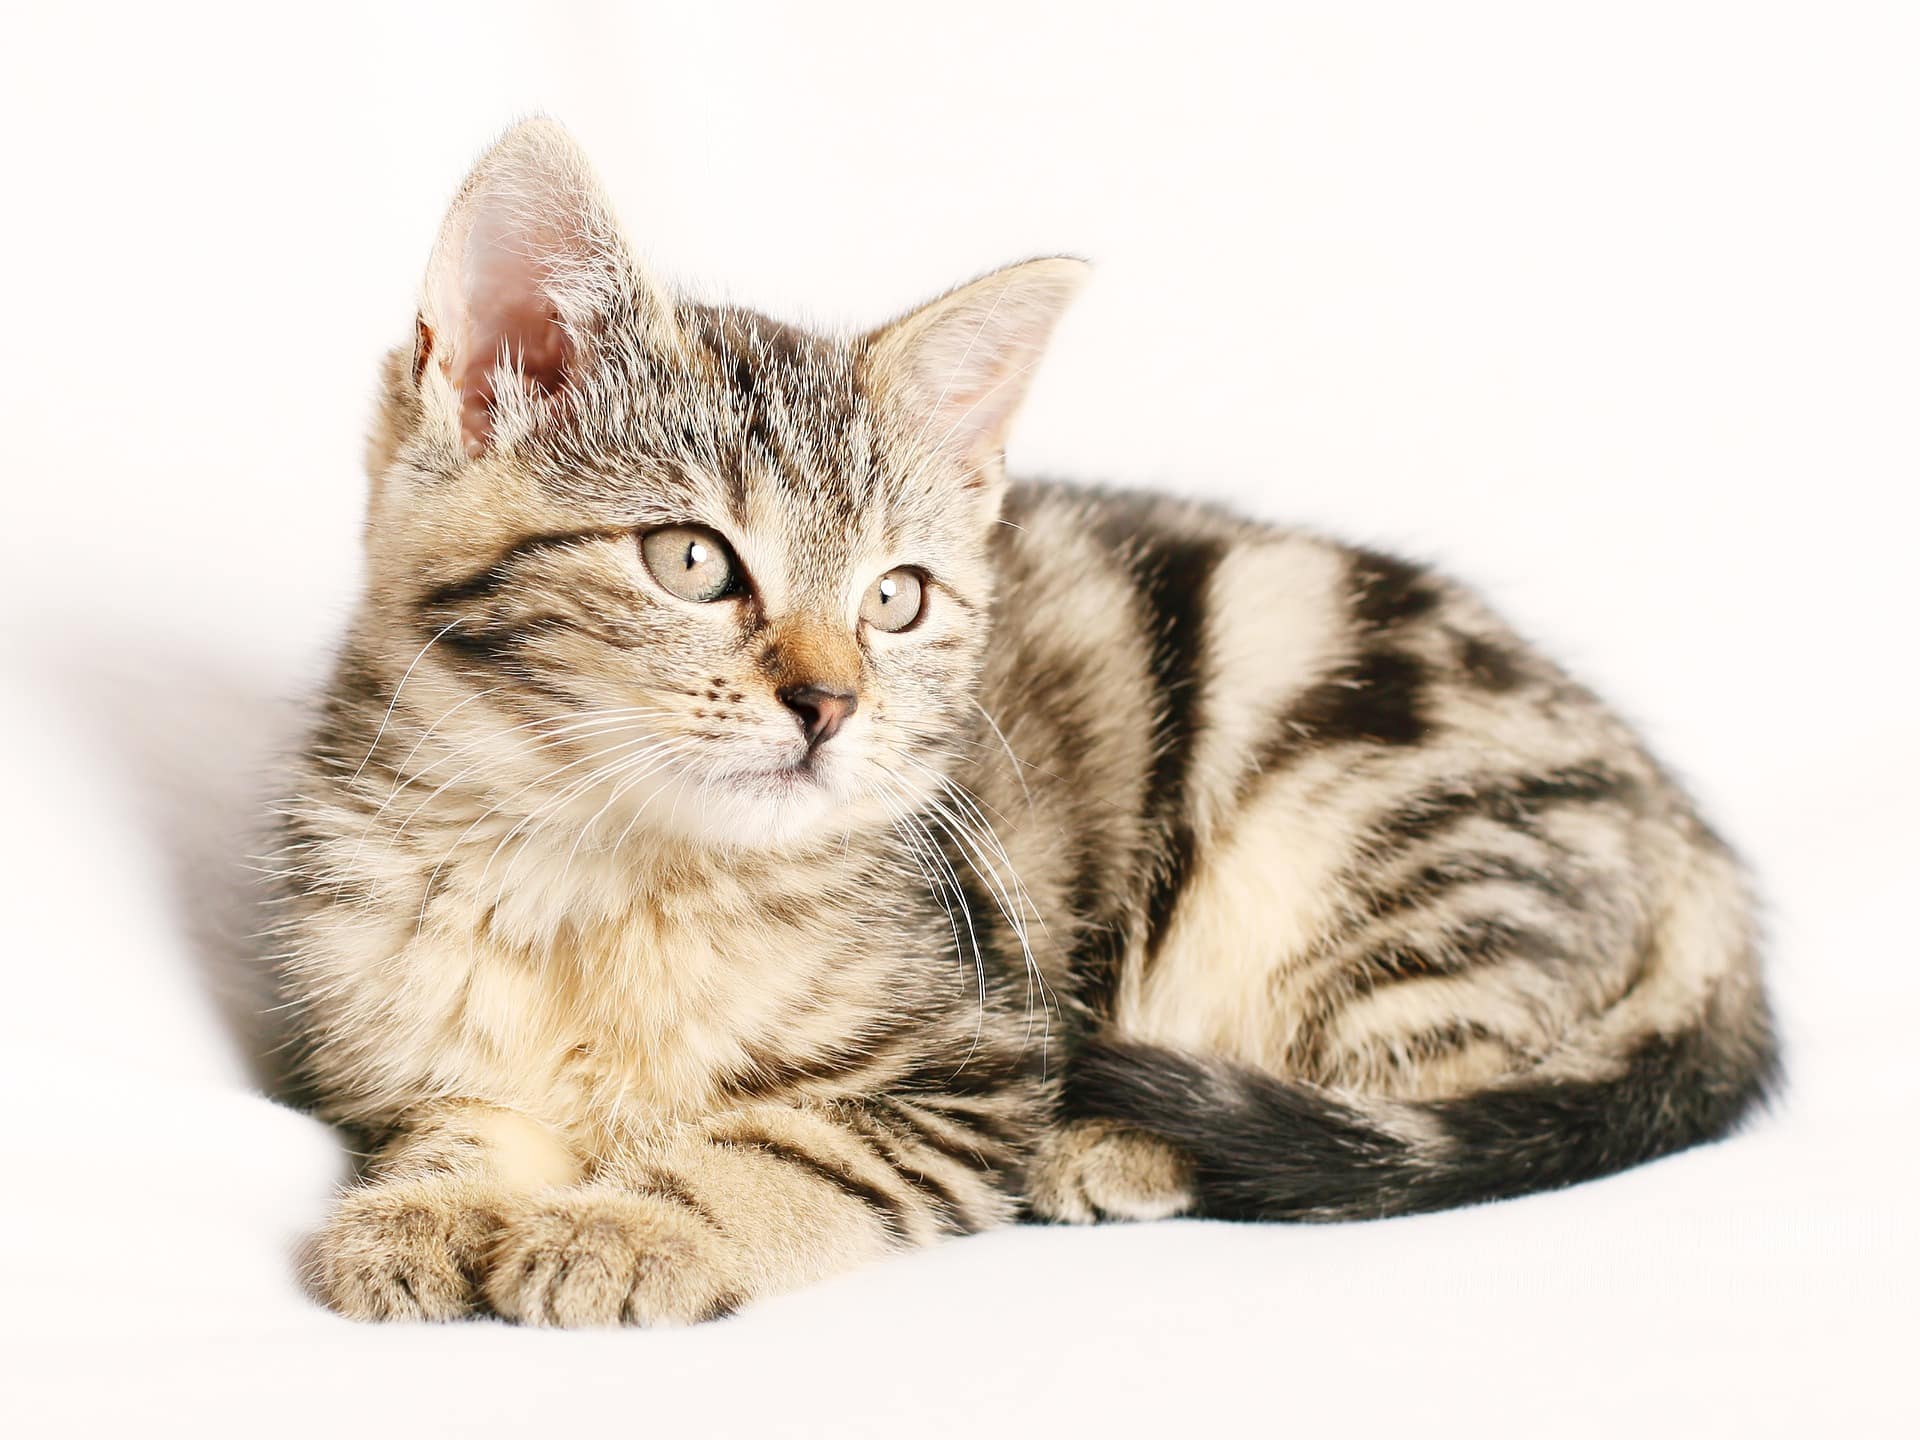 overtro landdistrikterne Bekræfte Billigaste kattförsäkringen-Bästa pris på kattförsäkringar